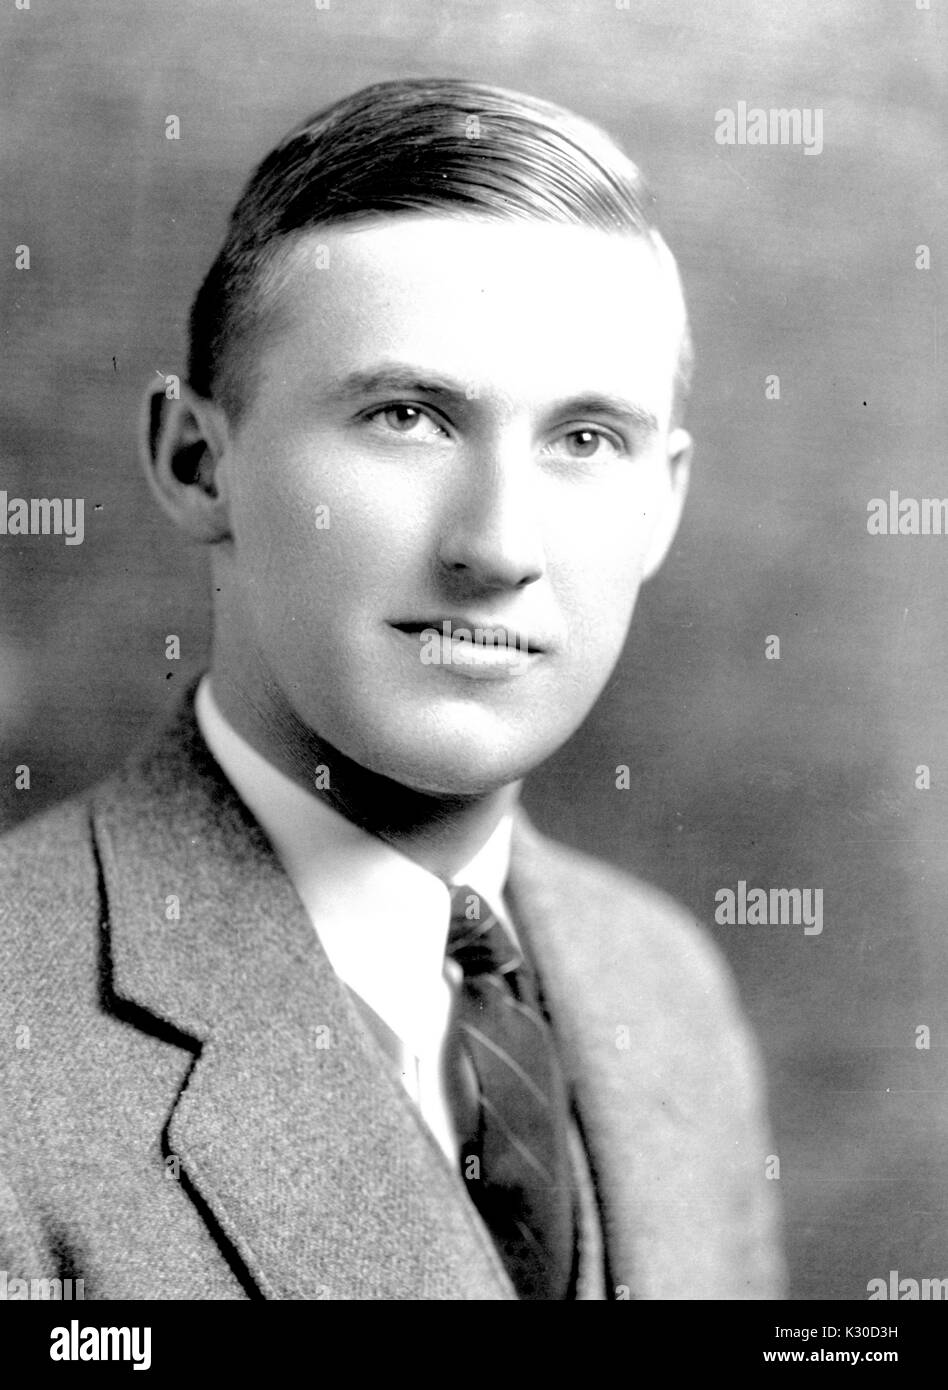 Portrait photographique de gris, de la poitrine vers le haut, de Stewart Neale Collenberg, étudiant d'économie à l'Université Johns Hopkins, chef pencha légèrement sur le côté, portant blazer et cravate, Baltimore, Maryland, 1930. Banque D'Images